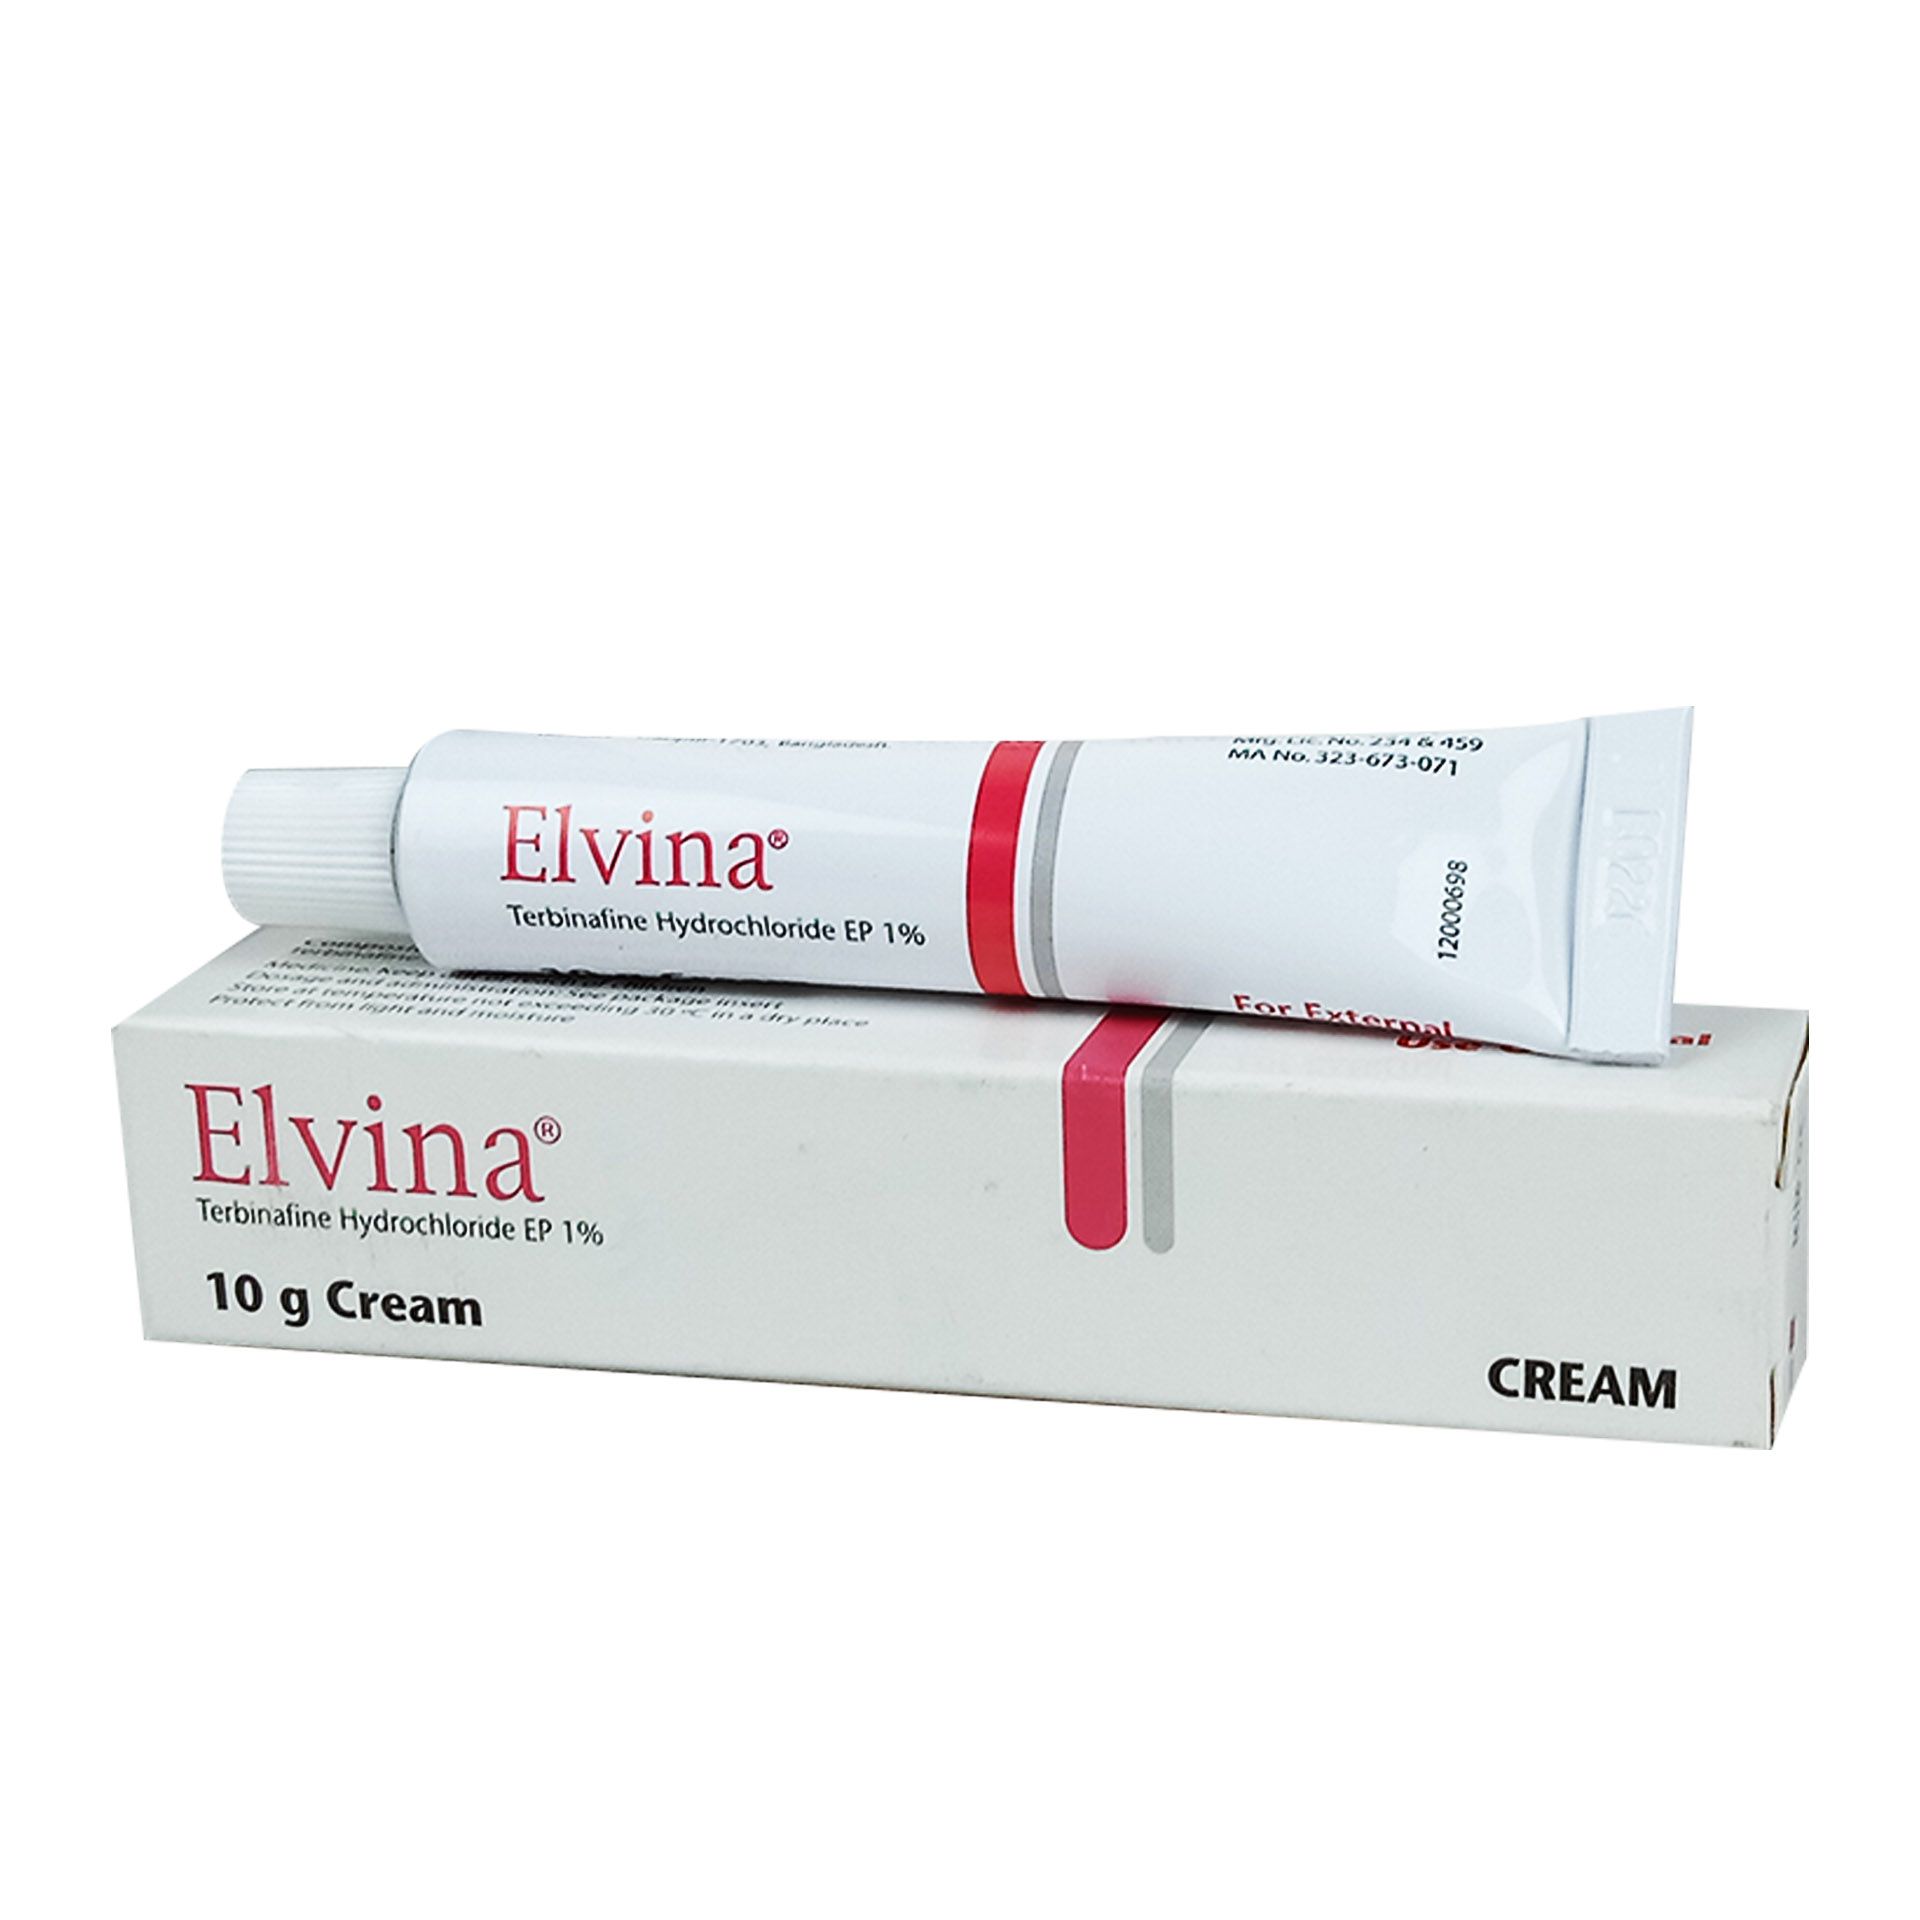 Elvina 1% Cream